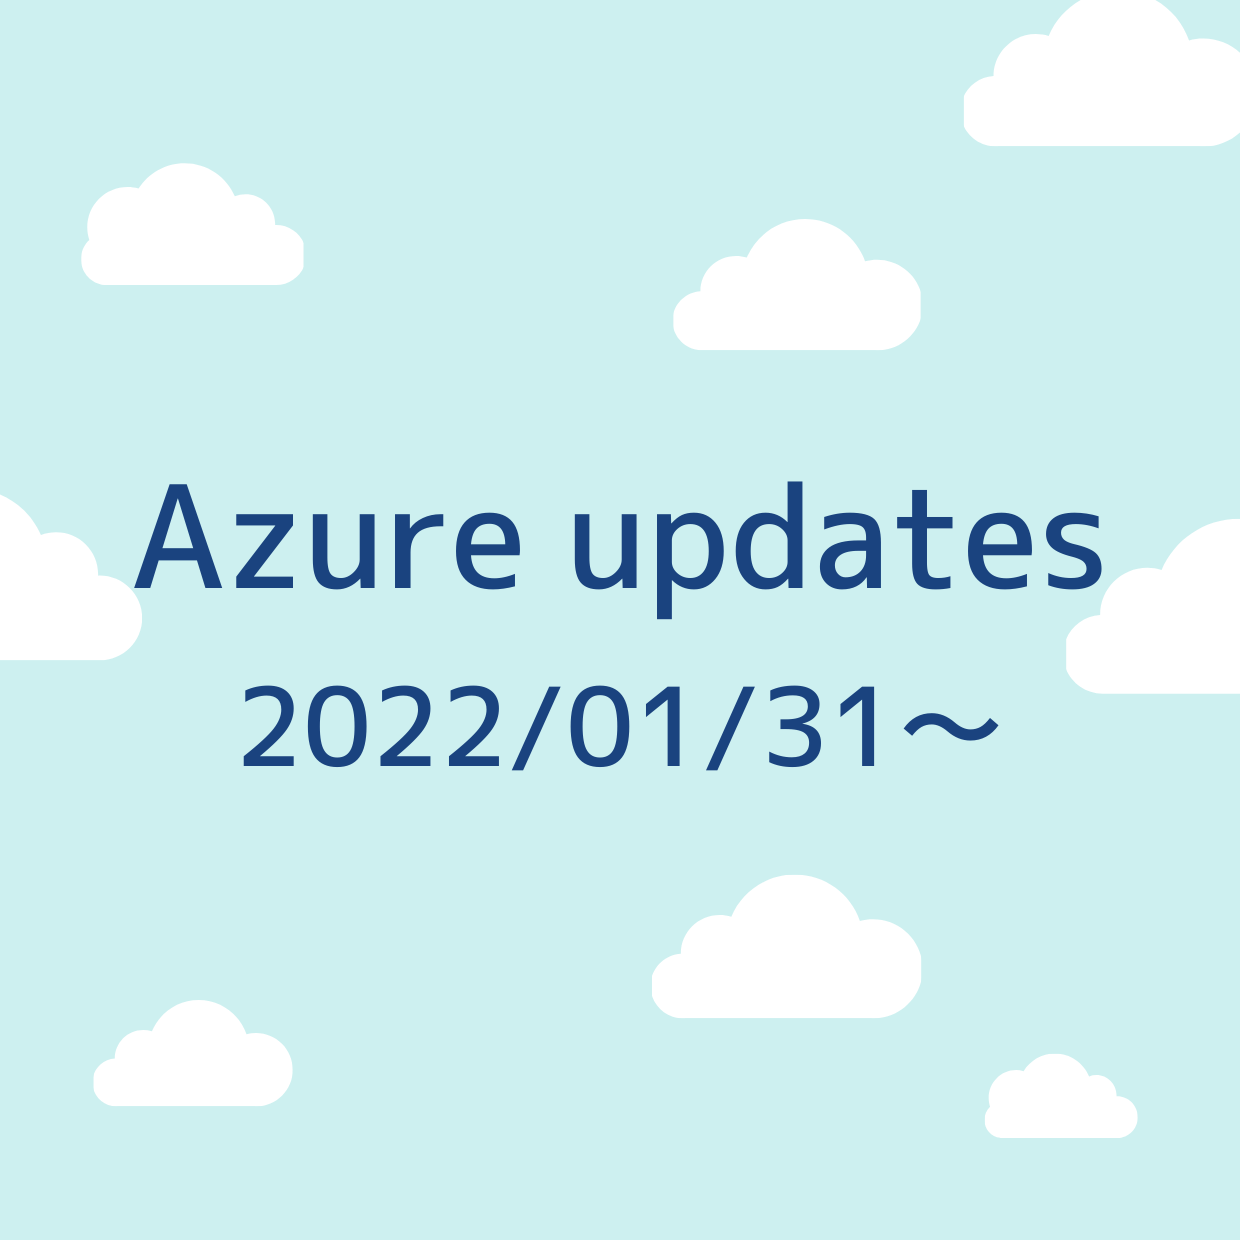 2022/01/31 週の Azure updates 日本語速報